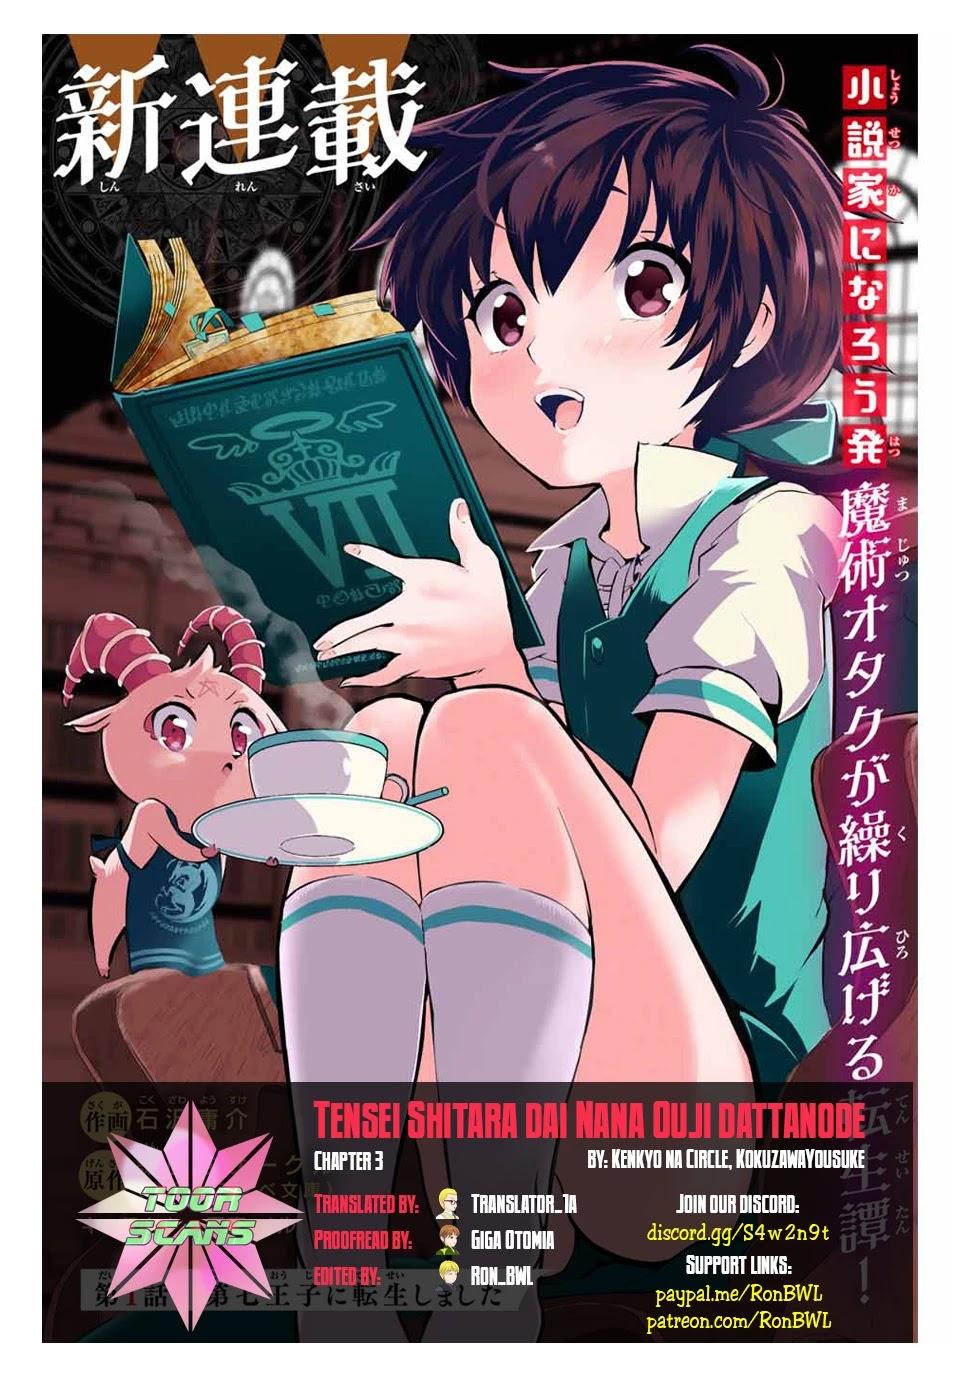 Light Novel 'Tensei shitara Dainana Ouji Datta node, Kimama ni Majutsu wo  Kiwamemasu' Gets TV Anime 